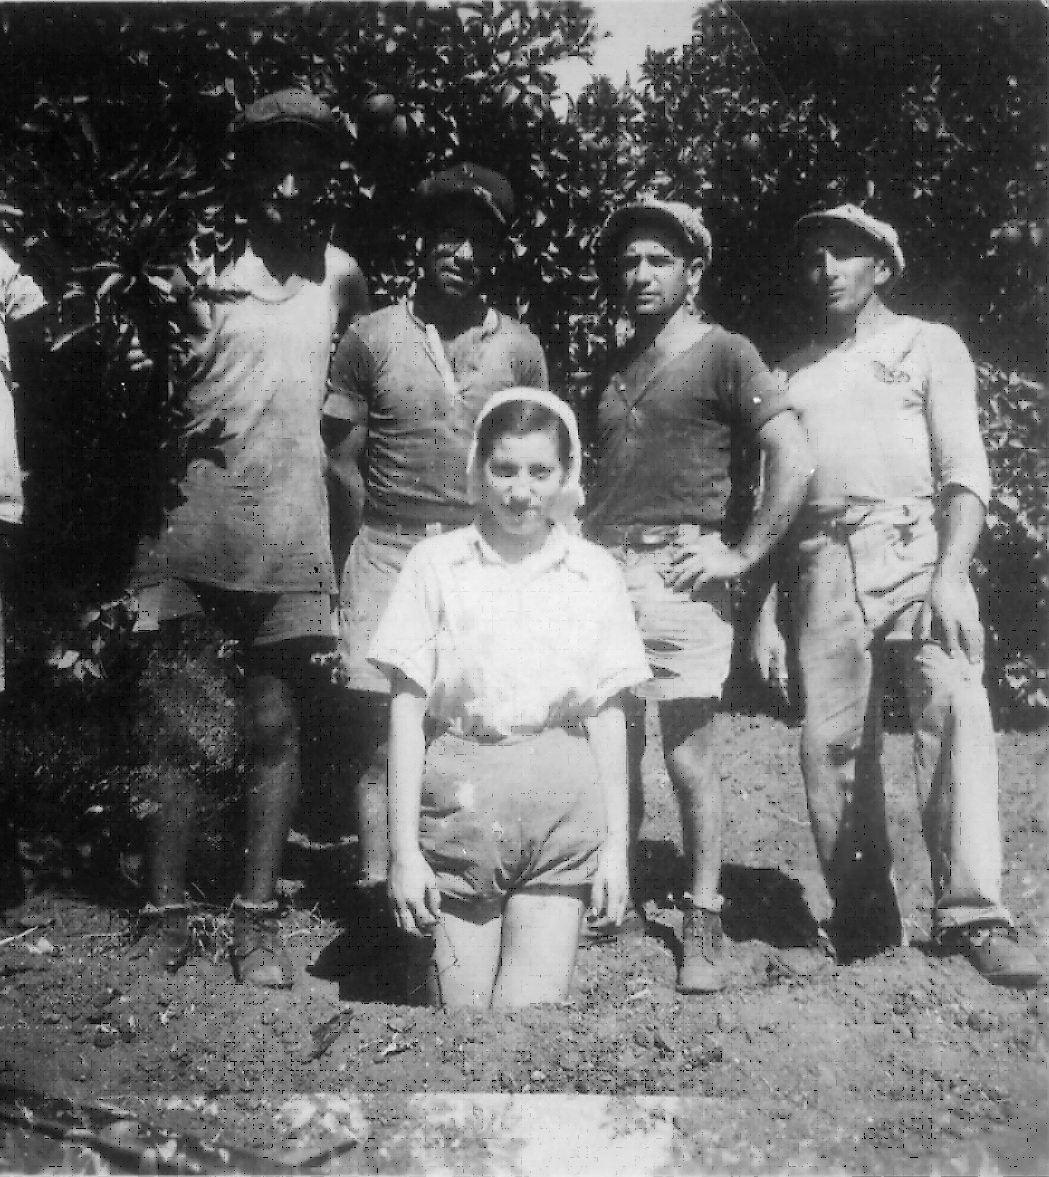 1934 שלום נפתלי סולוביצ'יק (ראשון מימין) בעבודה בפרדסי רעננה (מאוסף משפחת סולוביצ'יק)